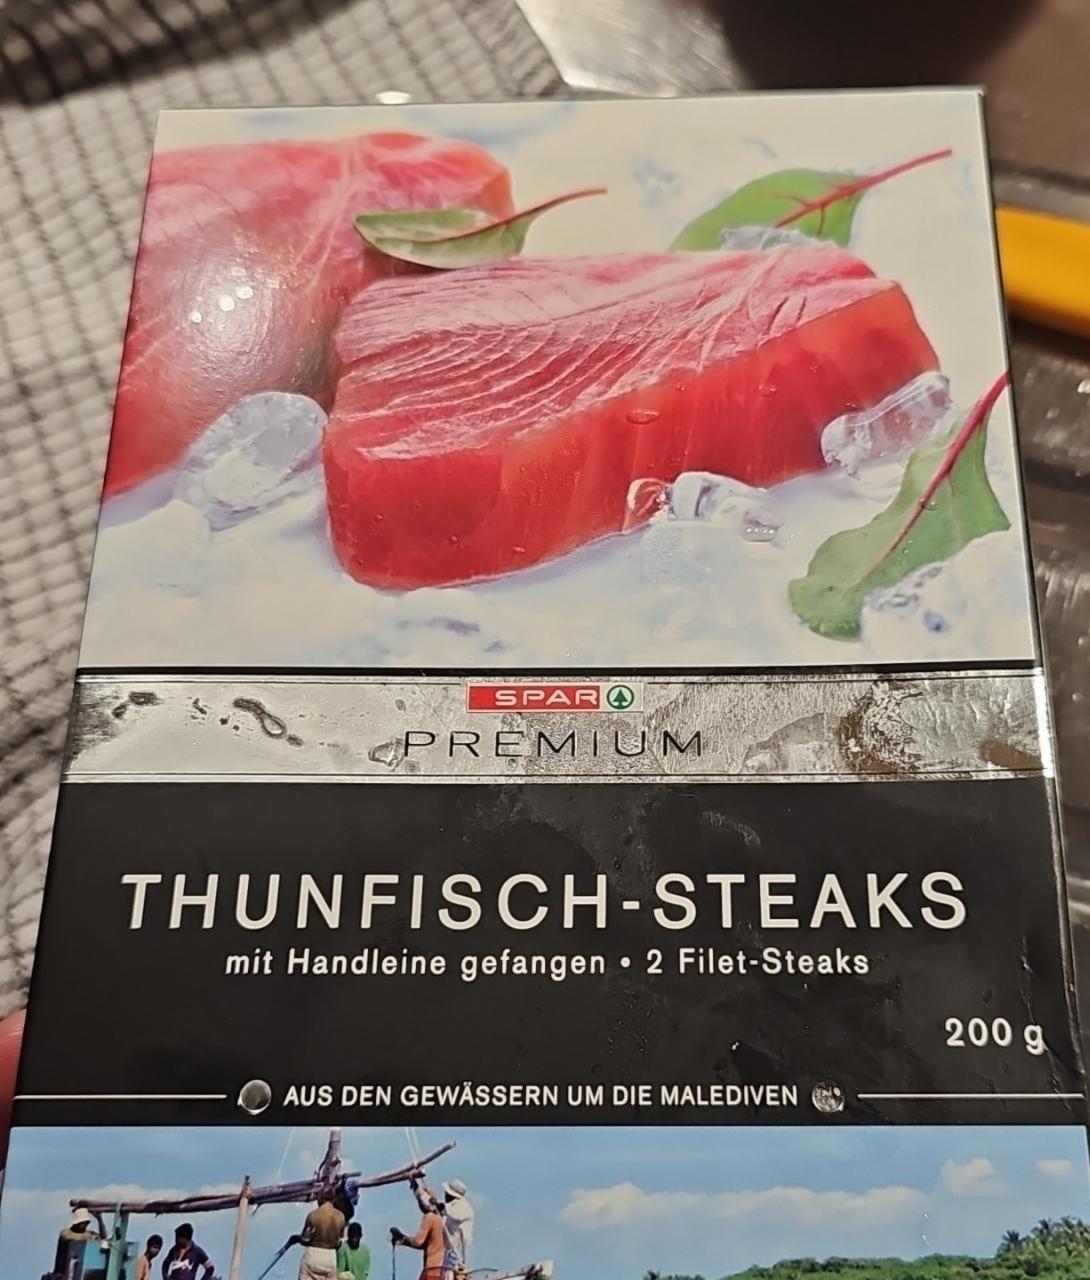 Fotografie - Thunfisch-Steaks Spar Premium